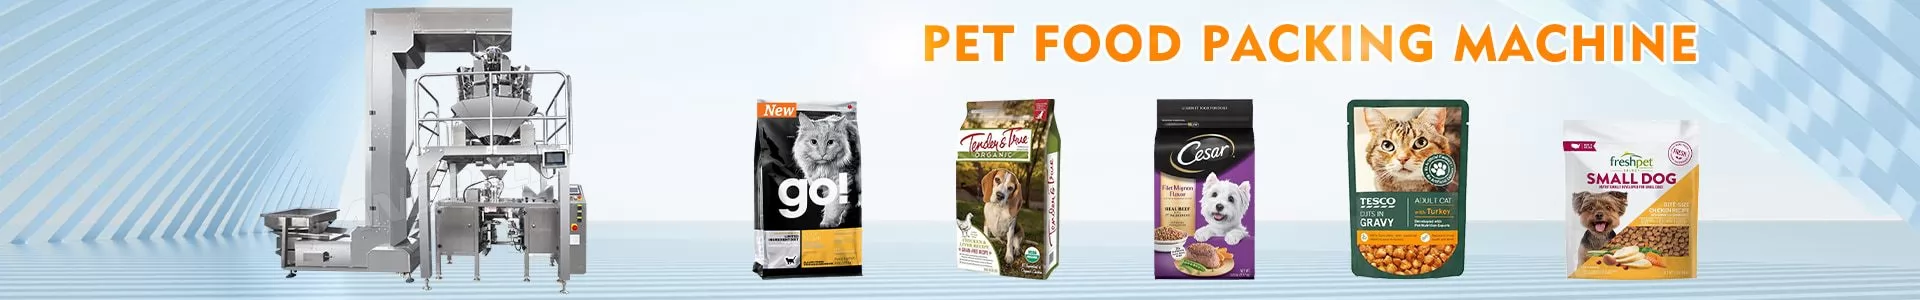 Pet Food Packing Machine